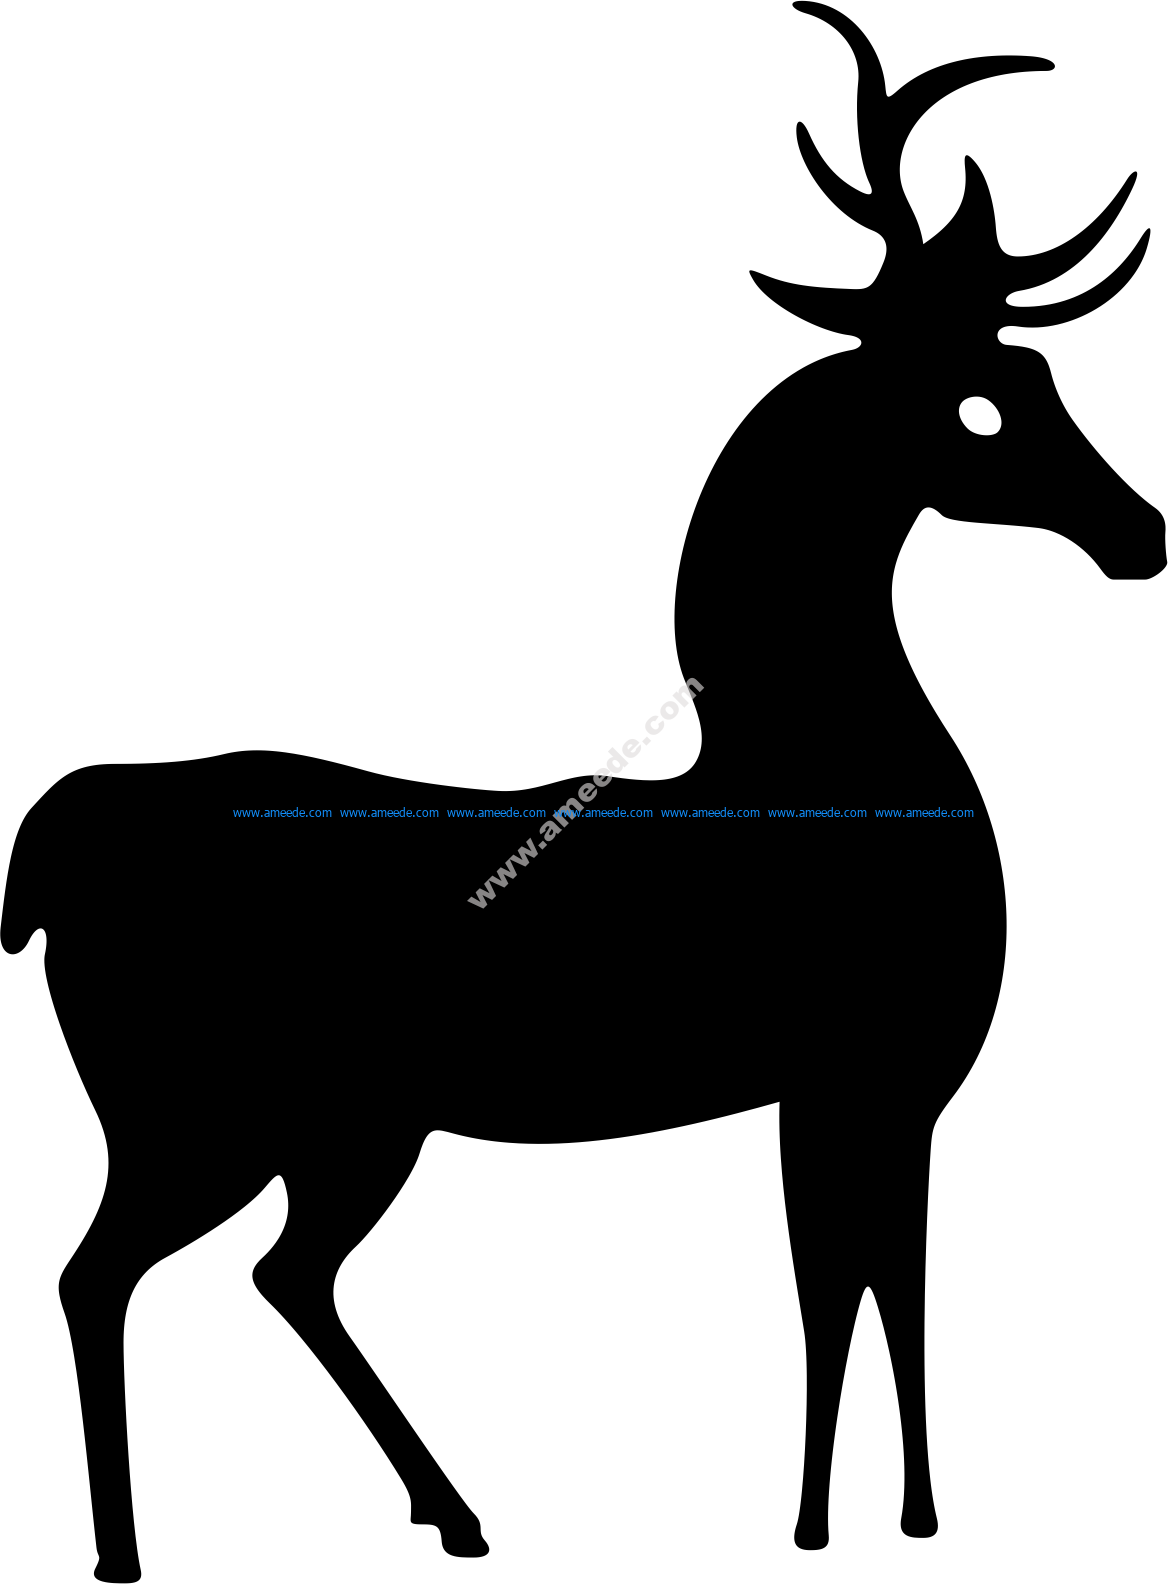 Download Deer Standing Silhouette Vector - Download Free Vector